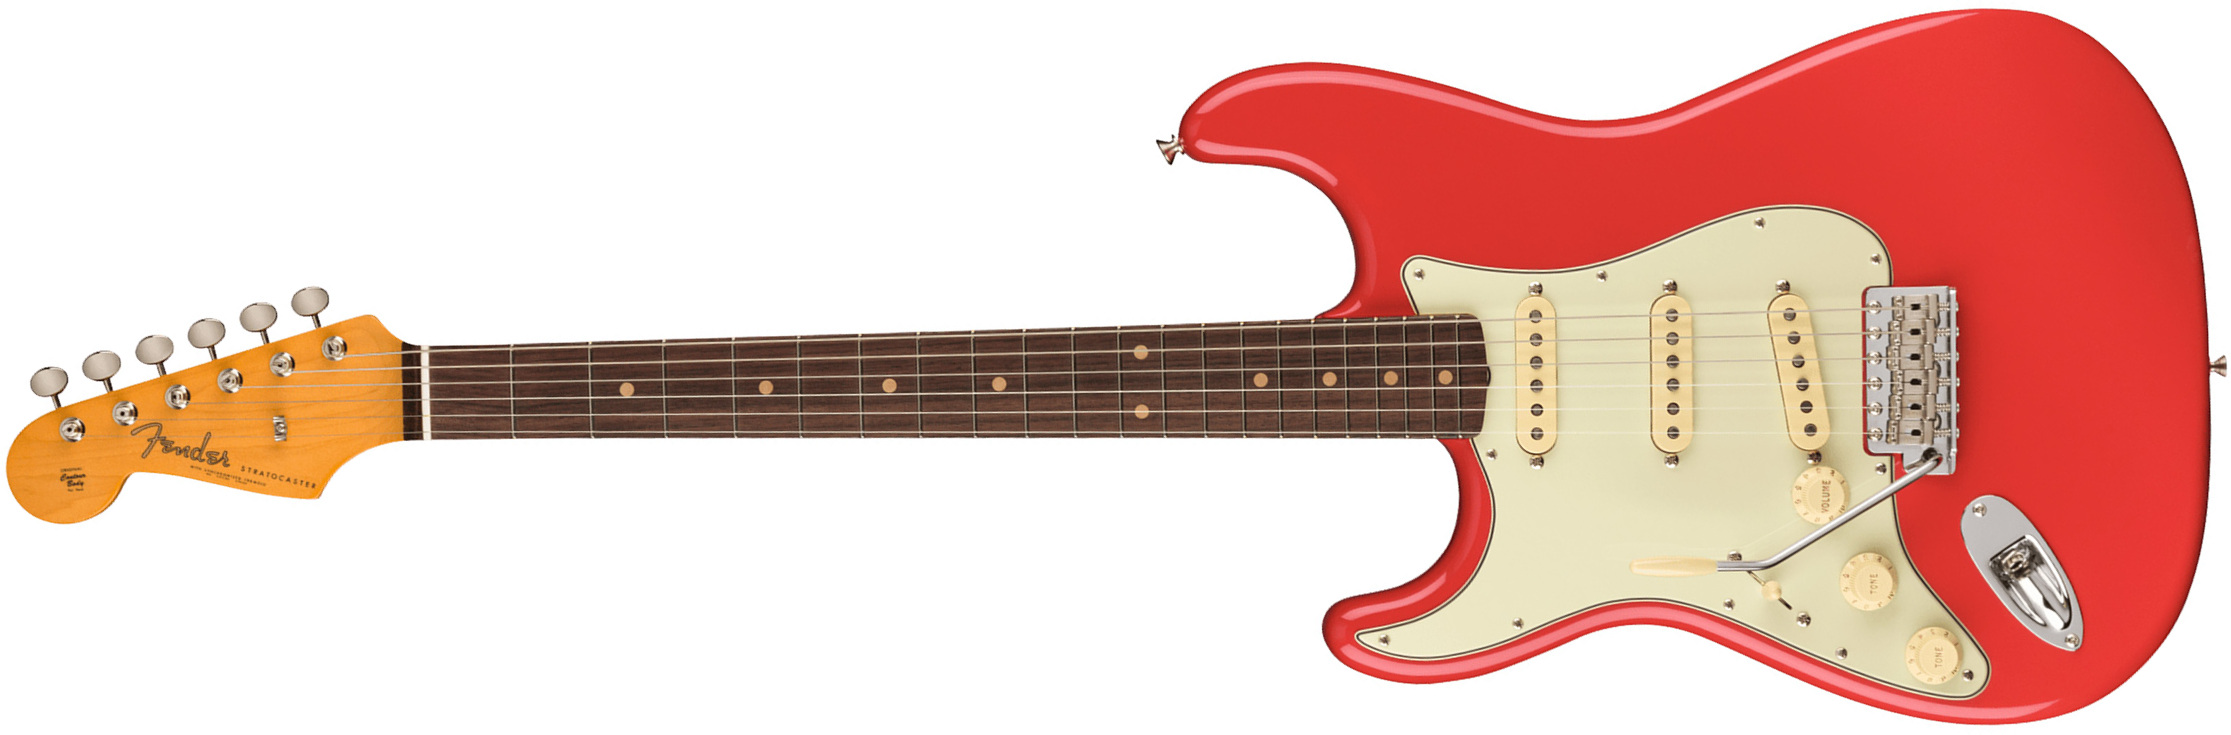 Fender Strat 1961 American Vintage Ii Lh Gaucher Usa 3s Trem Rw - Fiesta Red - Guitarra electrica para zurdos - Main picture